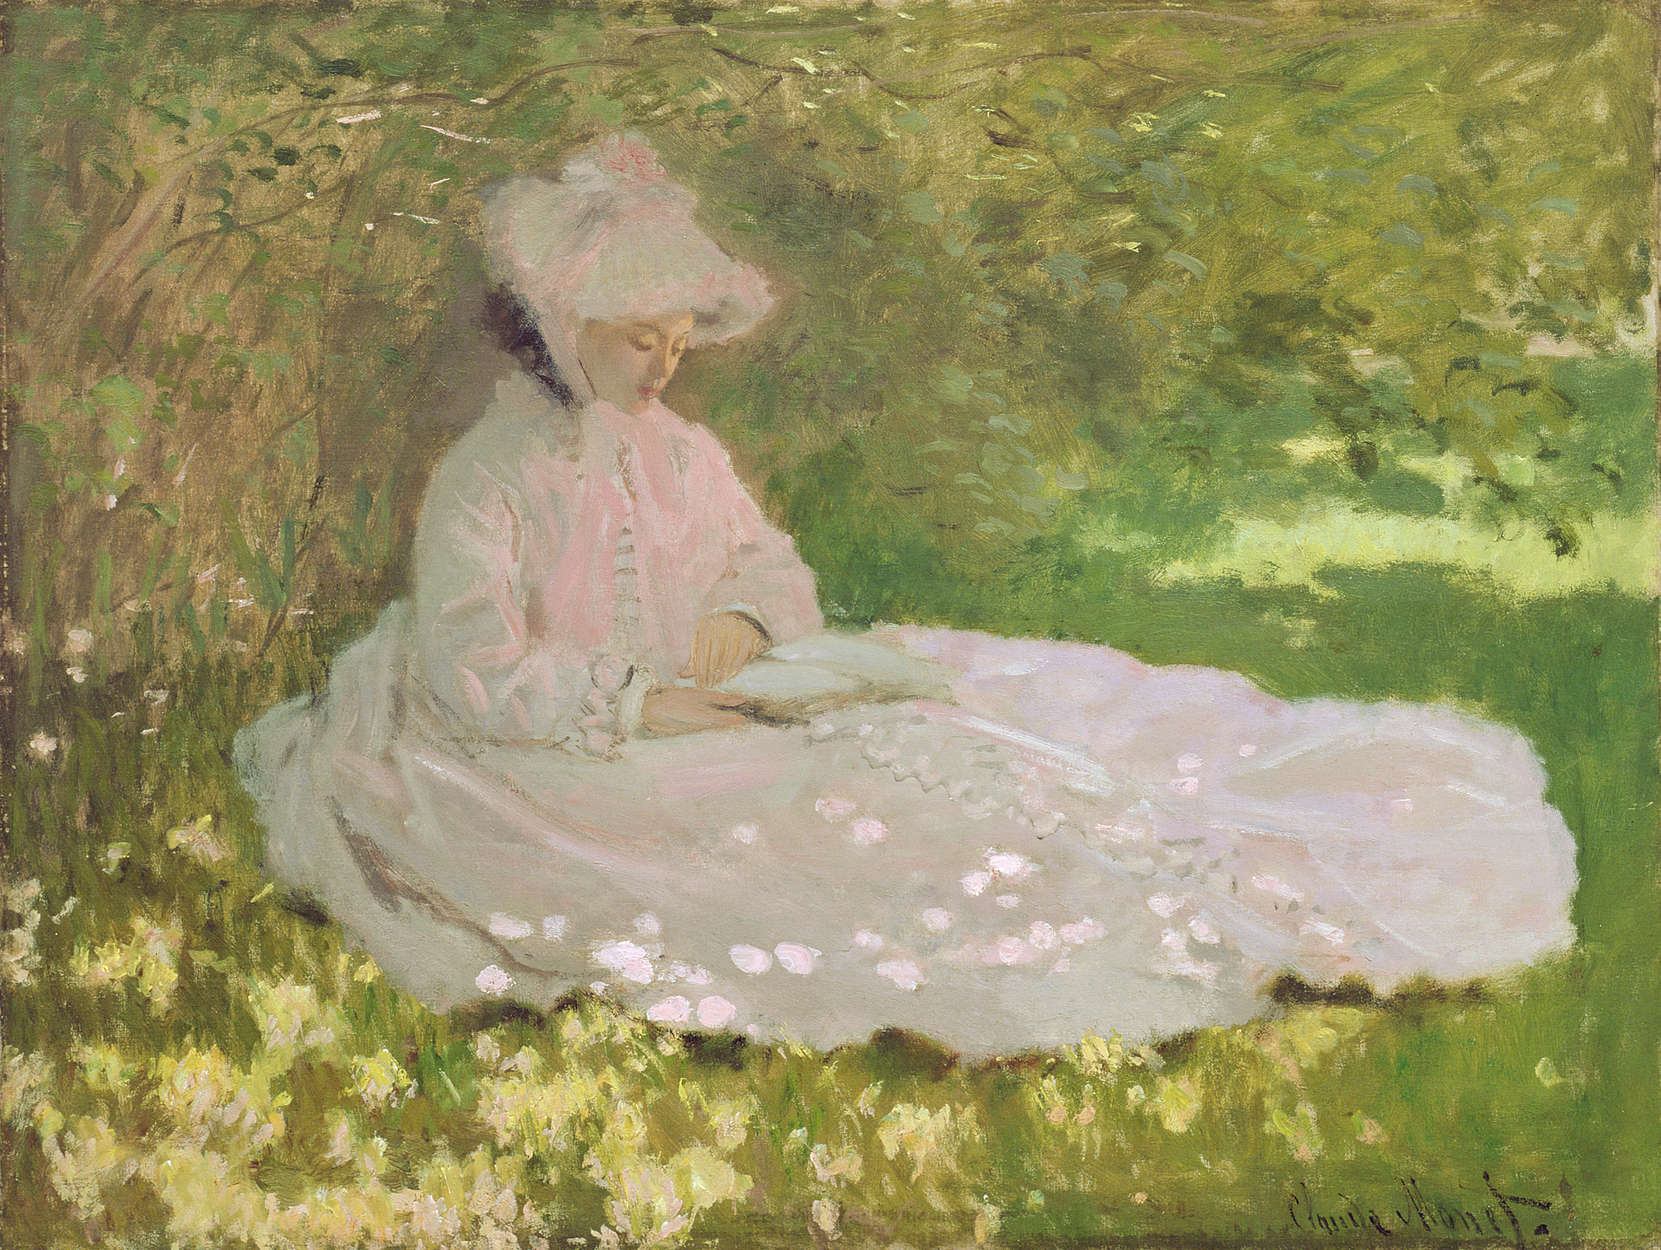             Papier peint panoramique "Le printemps" de Claude Monet
        